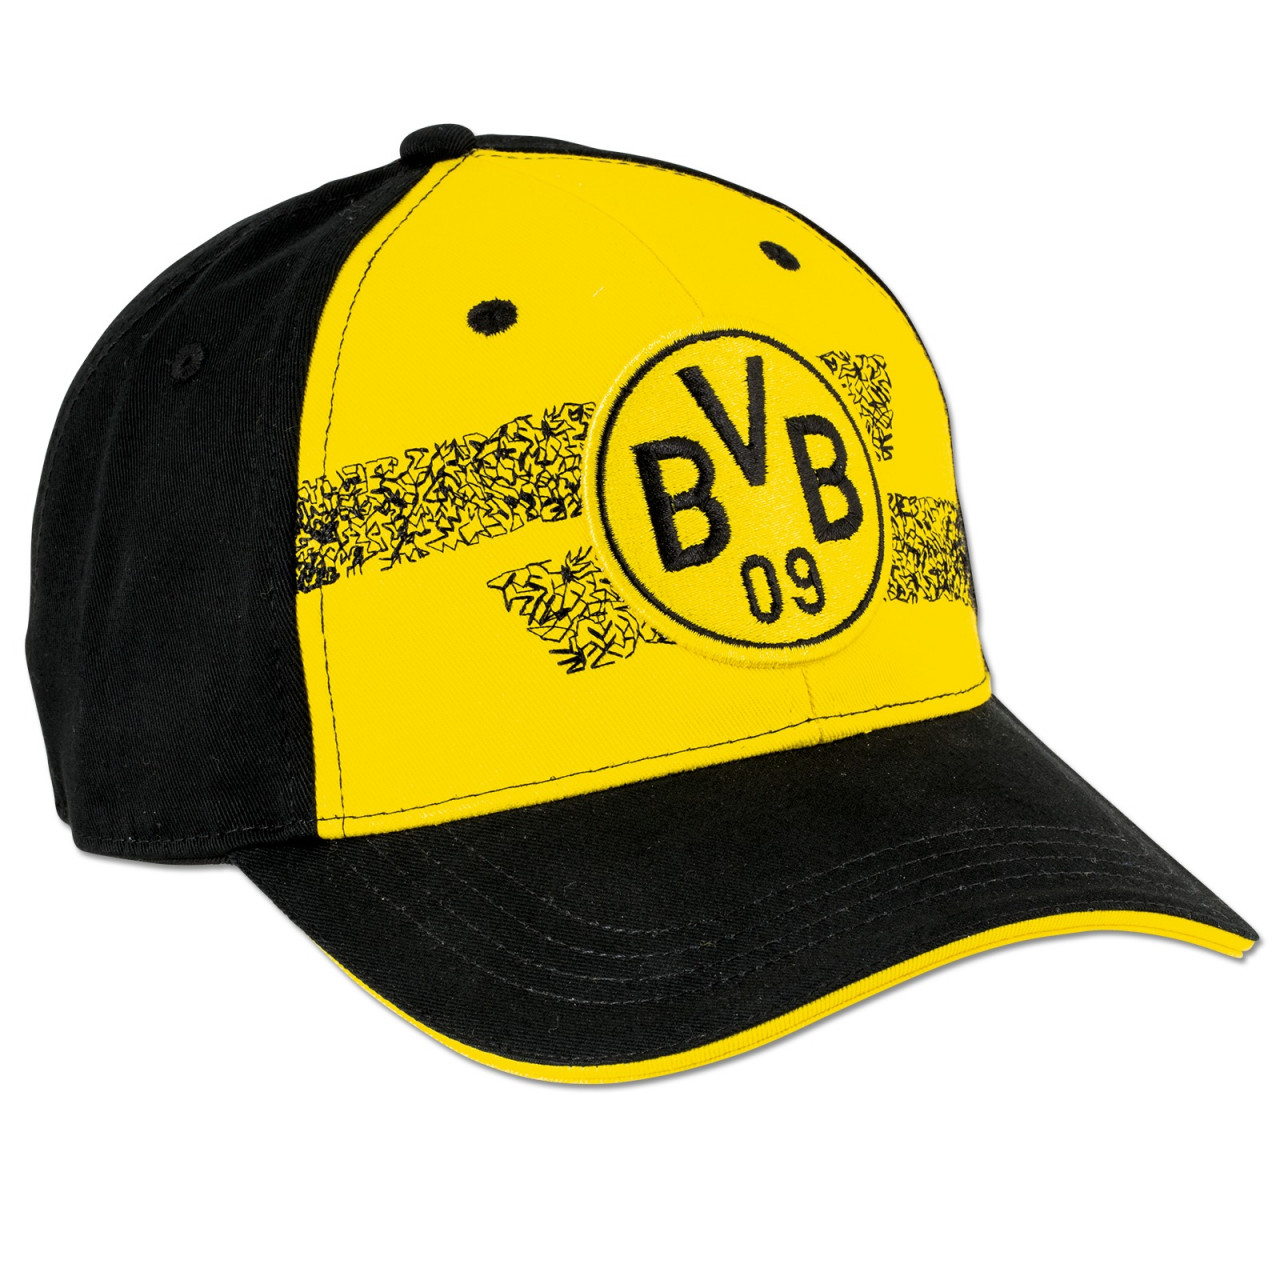 Borussia Dortmund BVB 09/ 1909/ del Cappuccio per Bambini